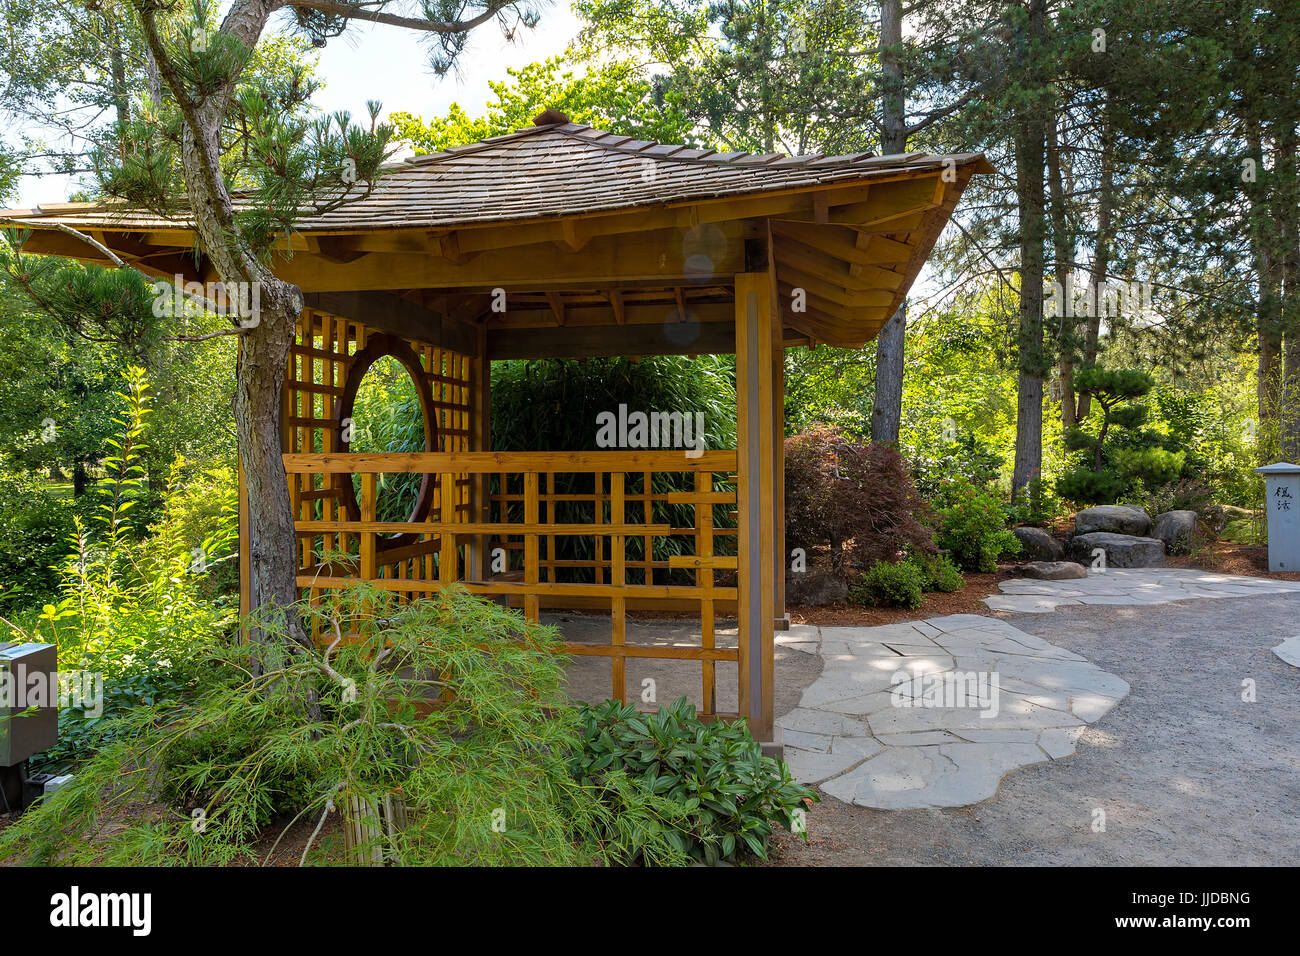 Gazebo in legno a Tsuru Isola Giardino giapponese in Gresham Oregon City Park Foto Stock